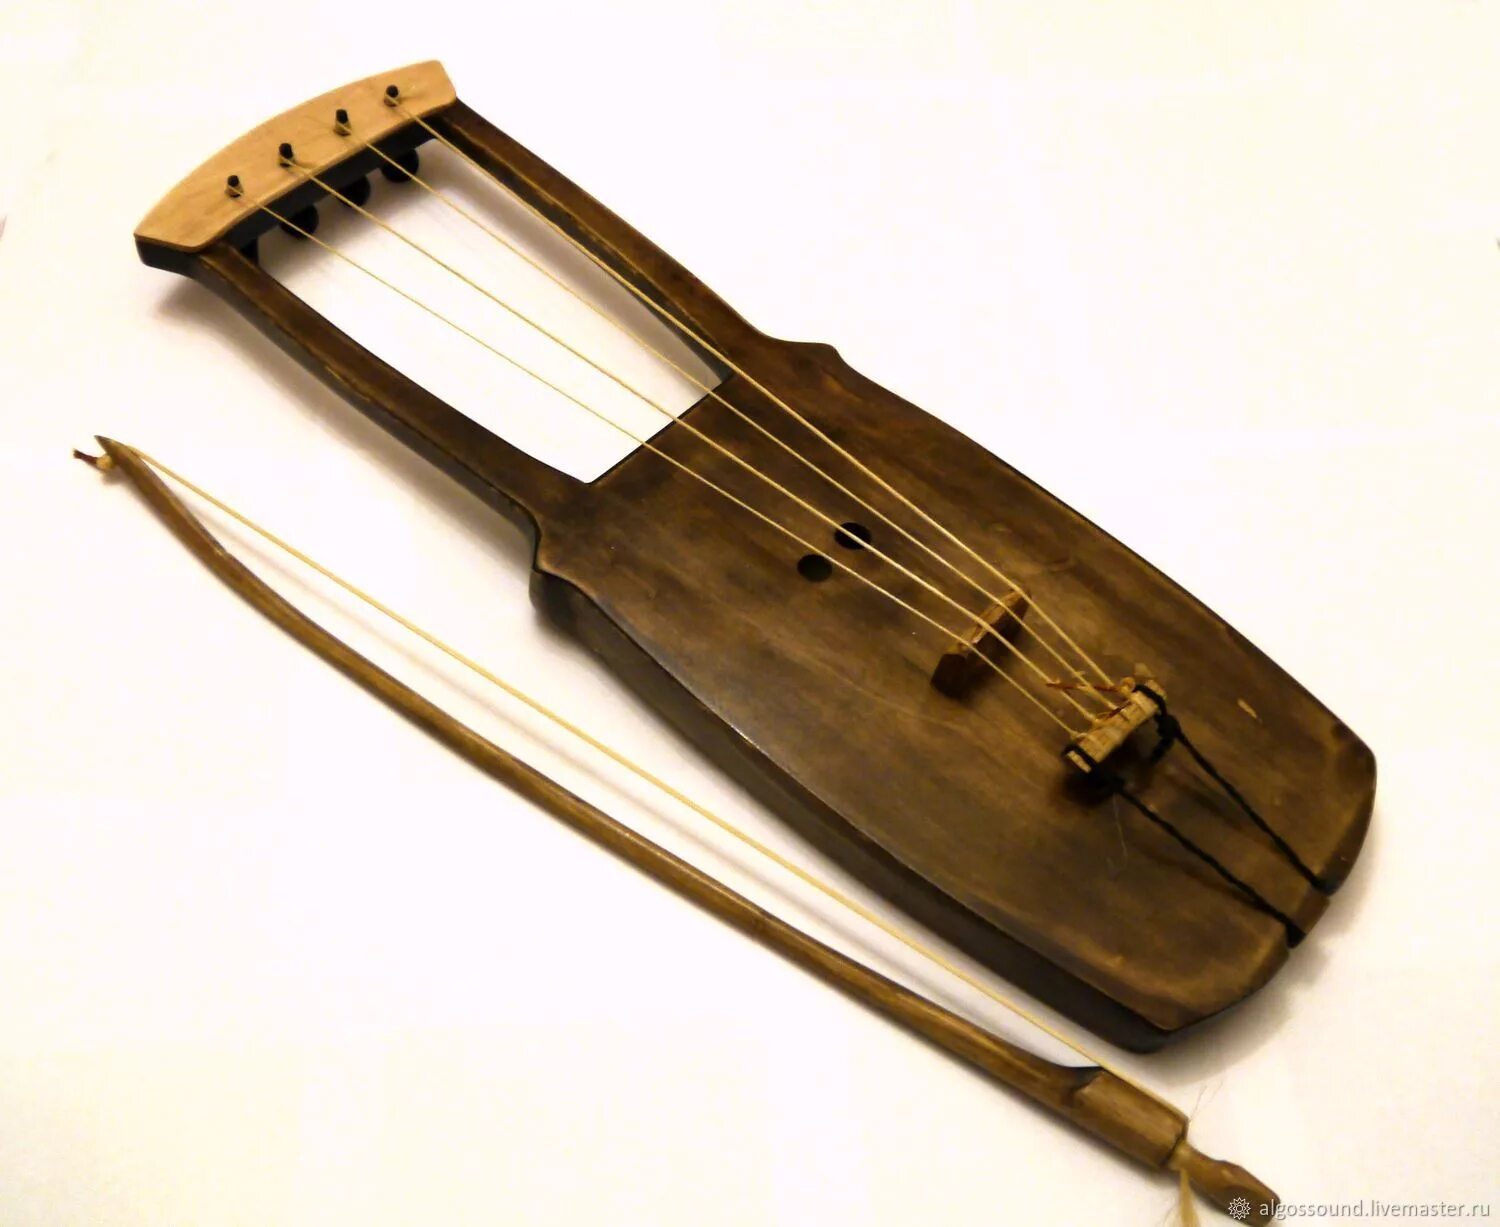 Высокий инструмент высокого регистра. Тагельхарпа Скандинавская смычковая. Йоухикко струнные смычковые. Тальхарпа музыкальный инструмент. Йоухикко музыкальный инструмент.